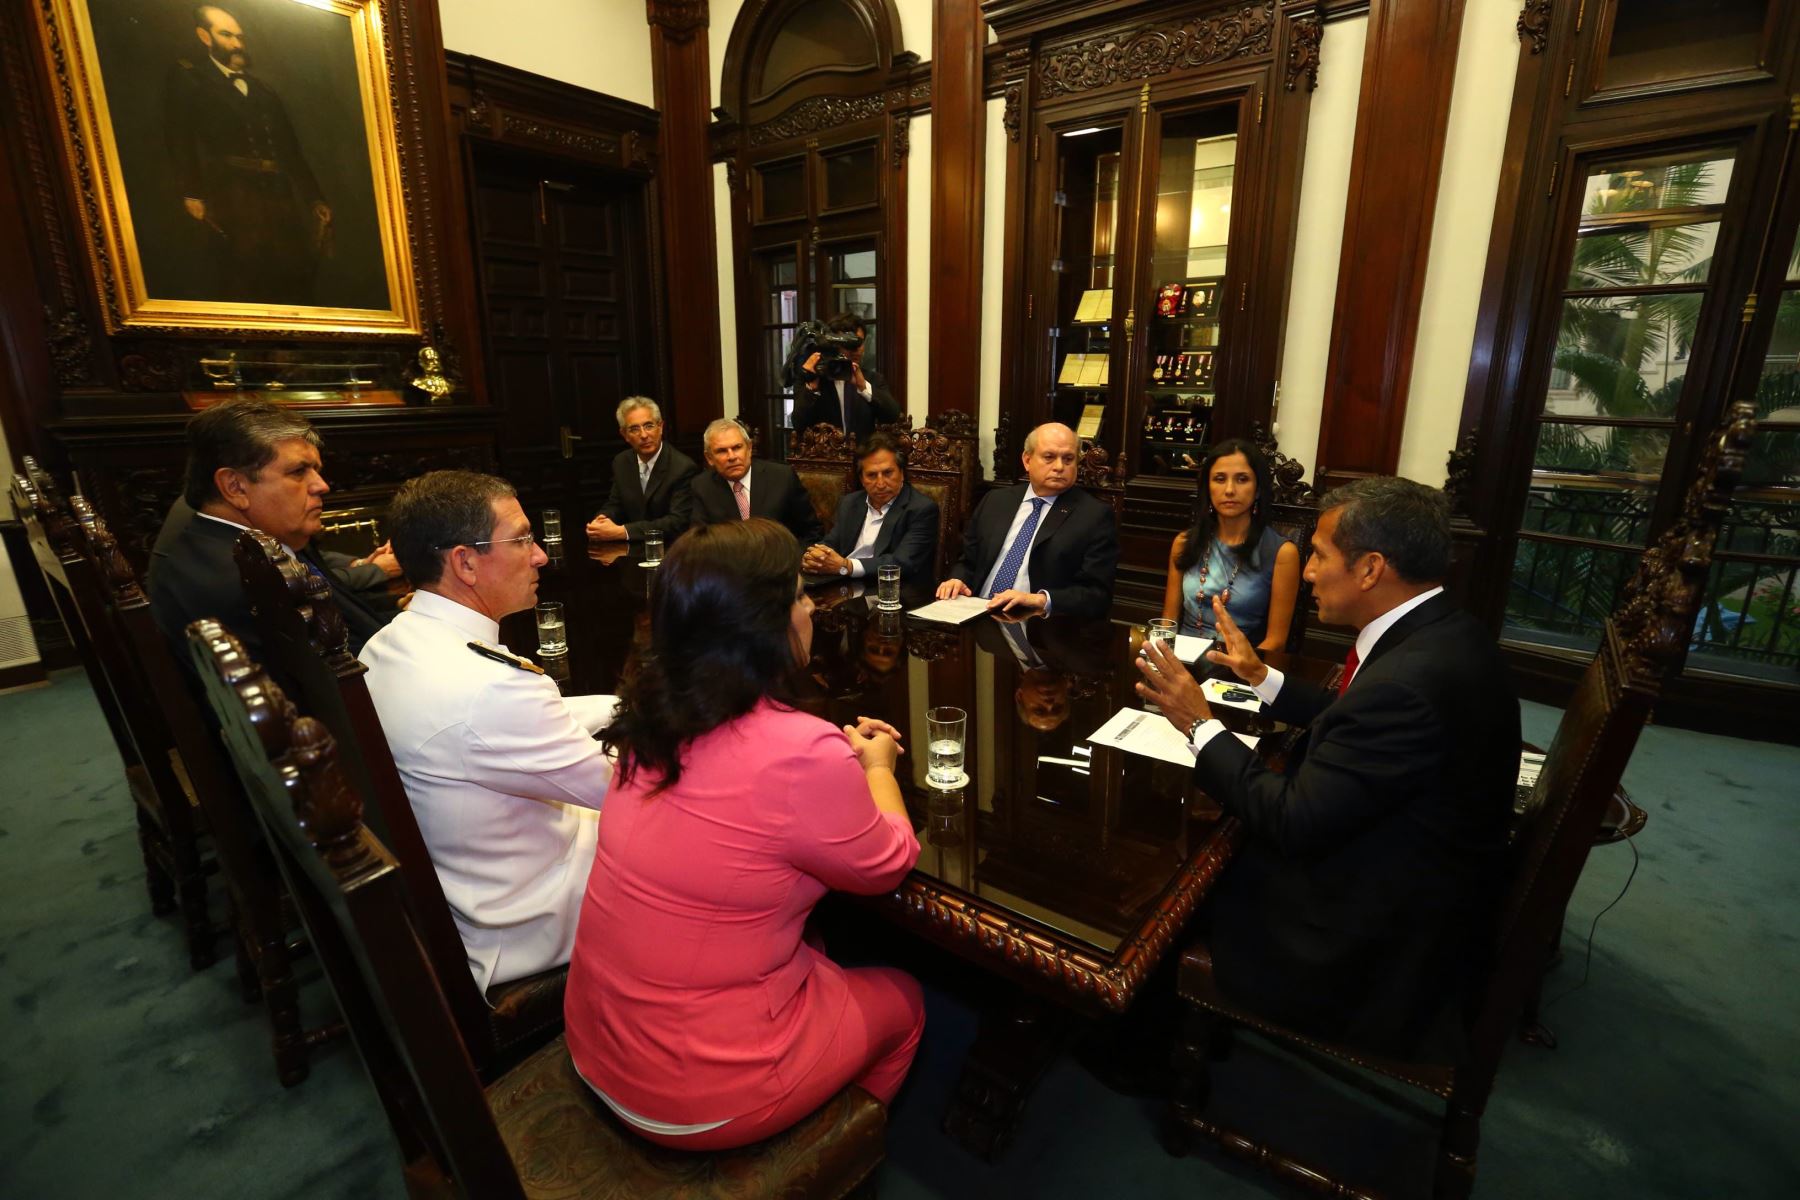 LIMA, 19 FEB. Presidente Ollanta Humala sostiene reunión con líderes políticos del país para informar sobre el presunto espionaje de Chile en perjuicio del Perú. Foto: ANDINA/Prensa Presidencia